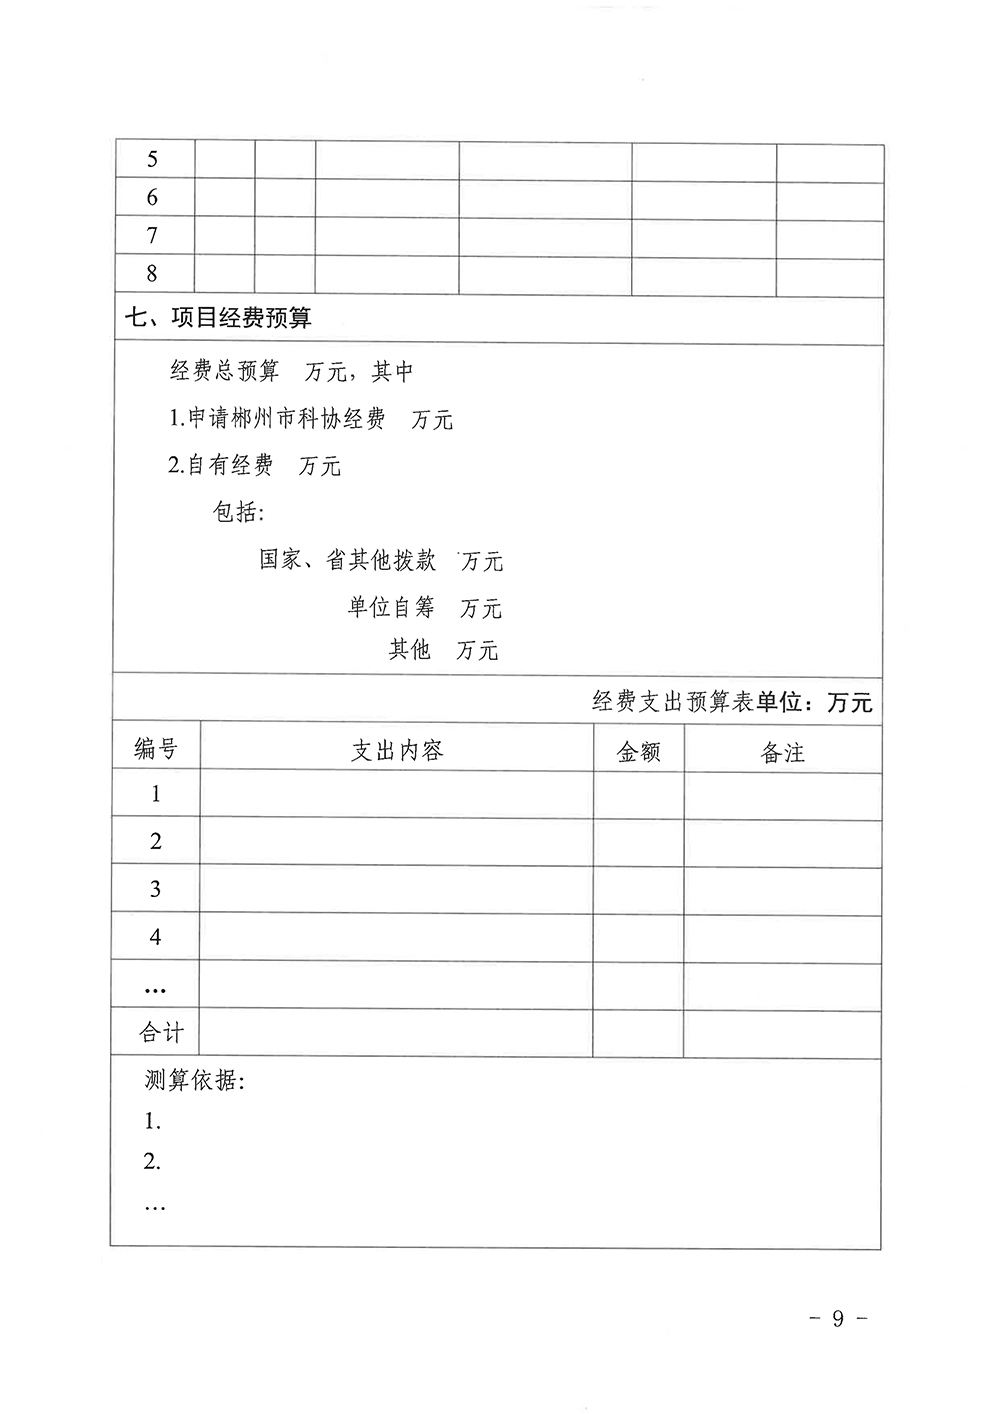 071310254750_0科协发〔2021〕19号关于公布2021年度郴州市科协学会服务能力提升计划项目评审结果的通知_9.jpg